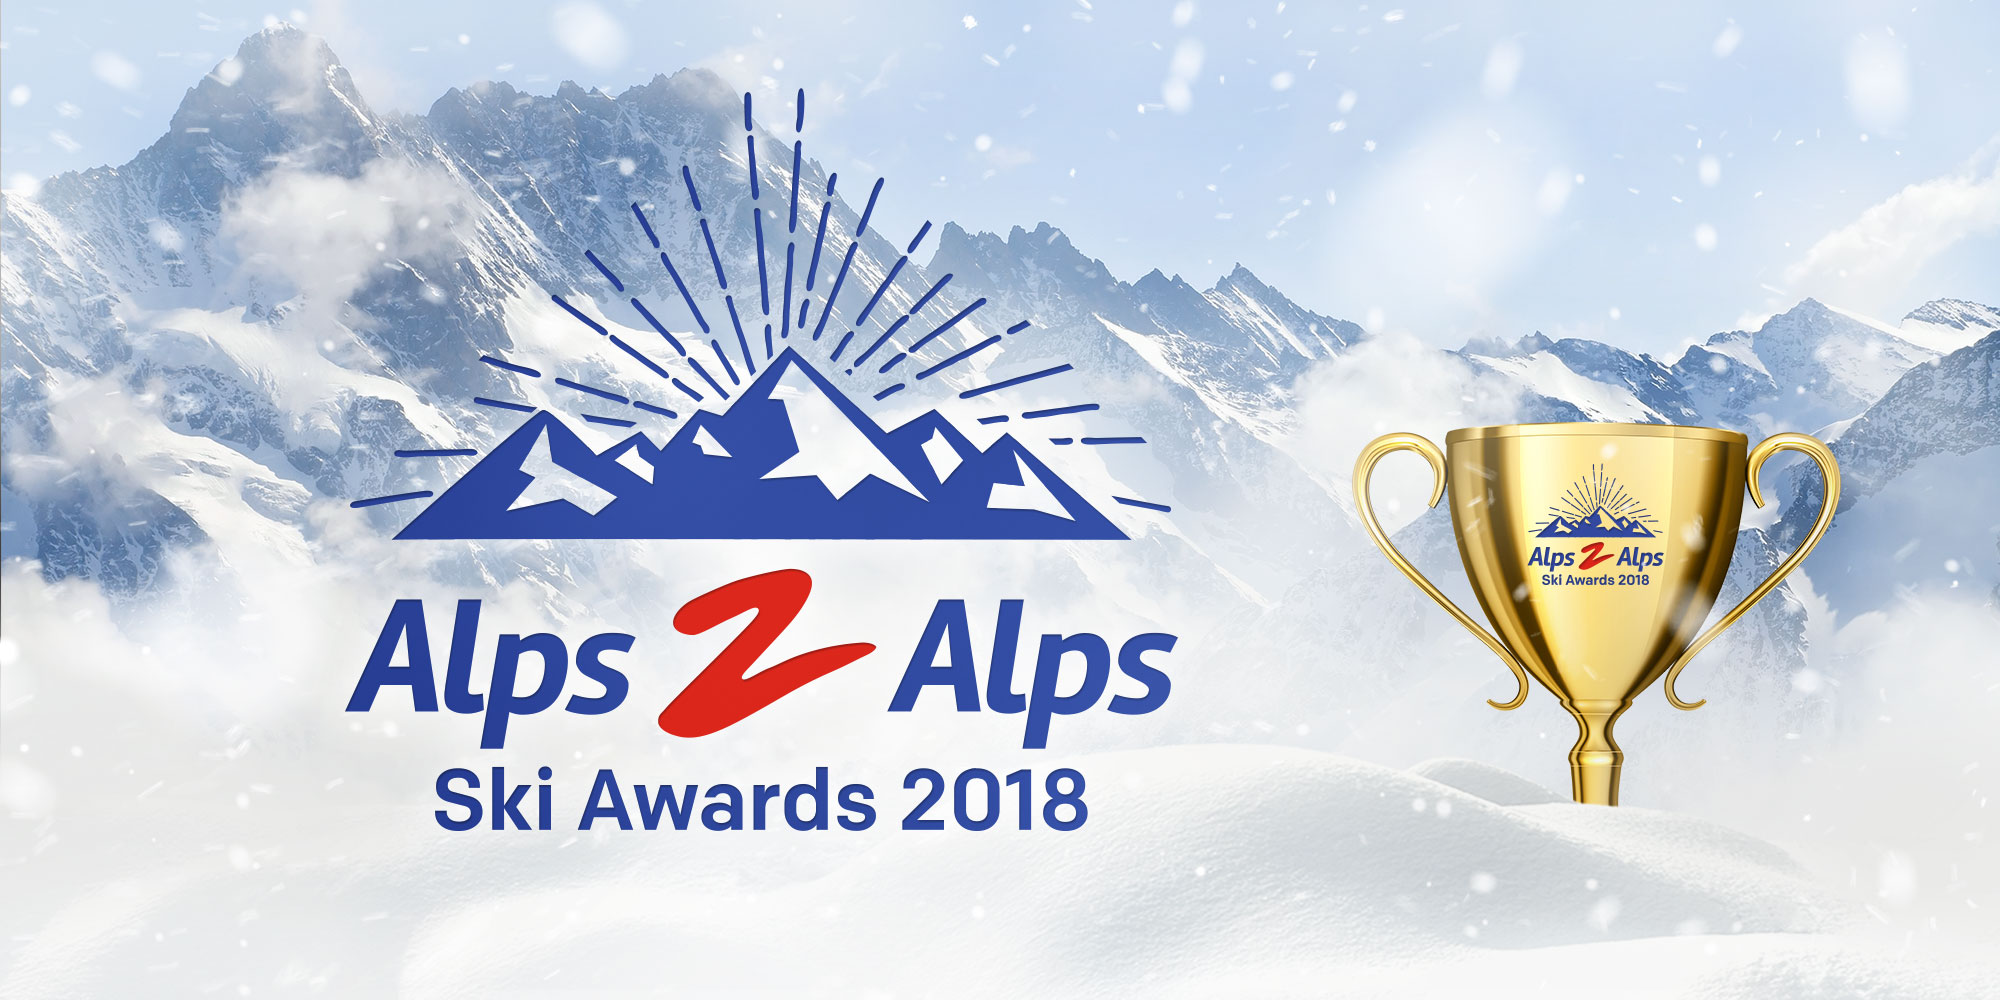 Alps2Alps ski awards